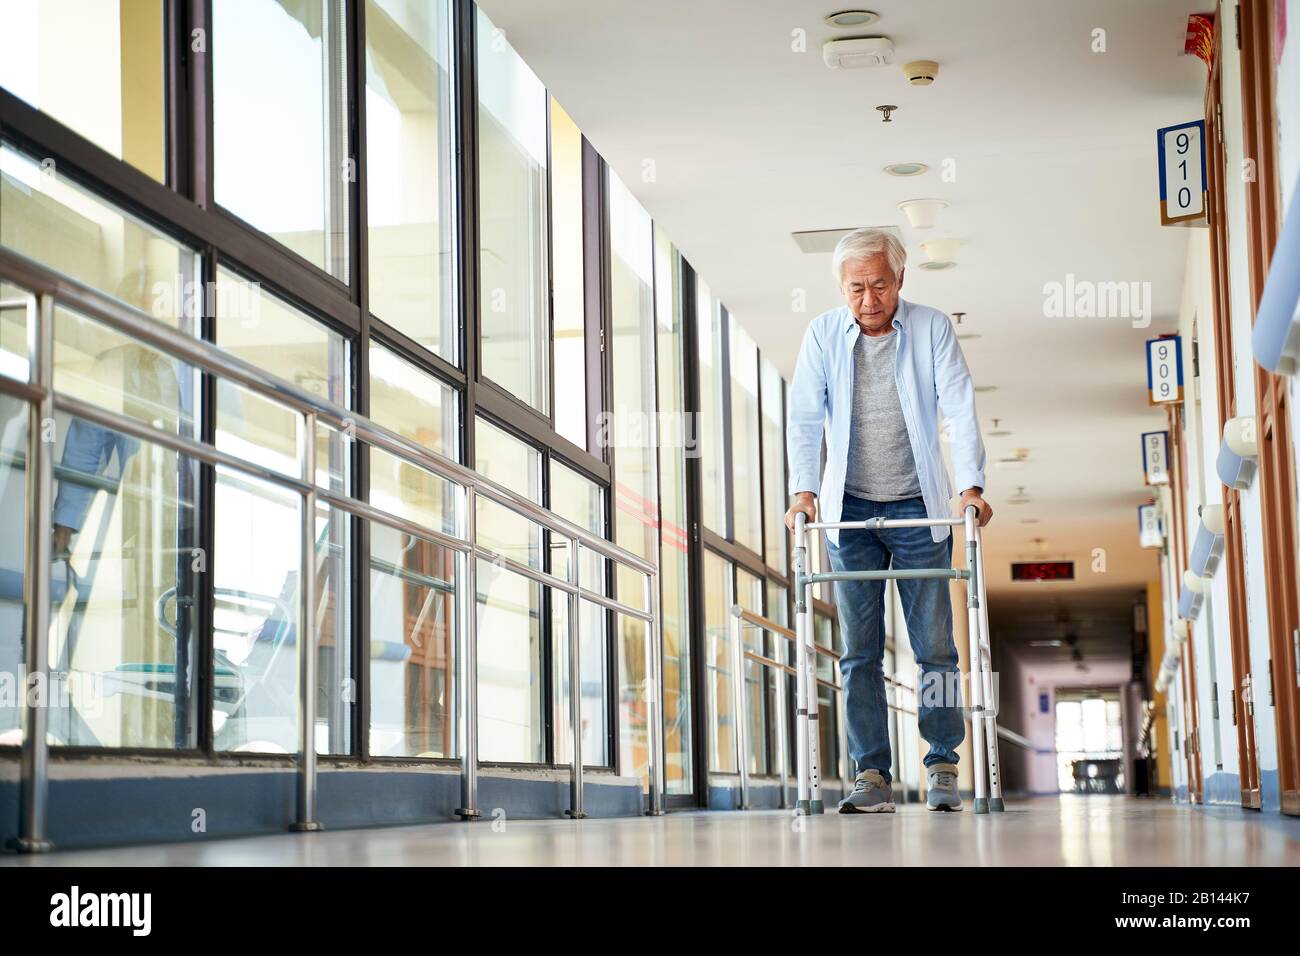 homme asiatique senior marchant à l'aide d'un marcheur dans le couloir de la maison de soins infirmiers Banque D'Images